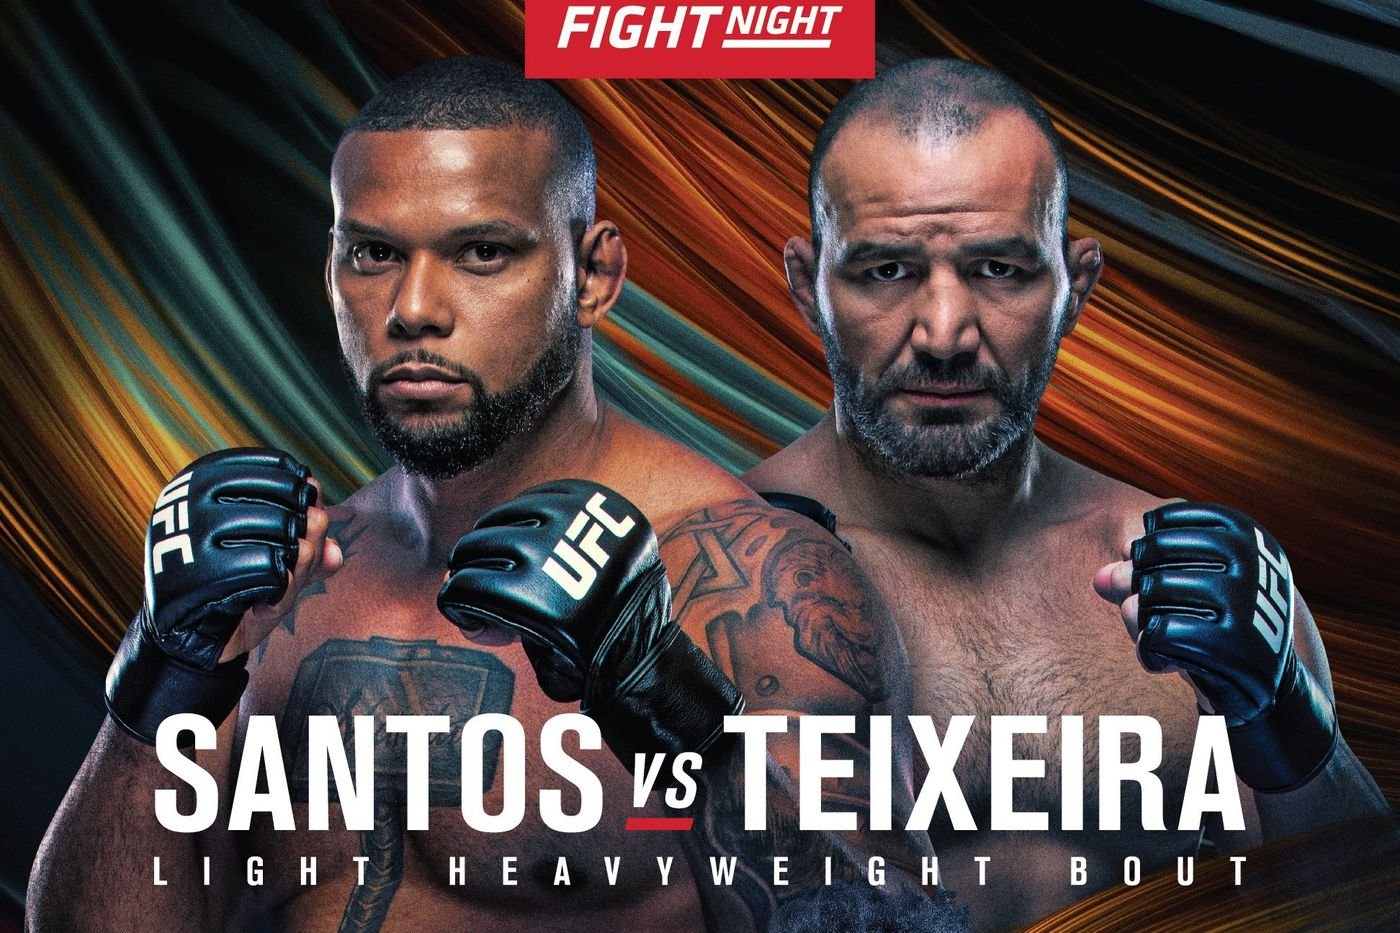 UFC Fight Night 182 Live Stream Free Santos vs Teixeira UFC Fight Streaming Free!